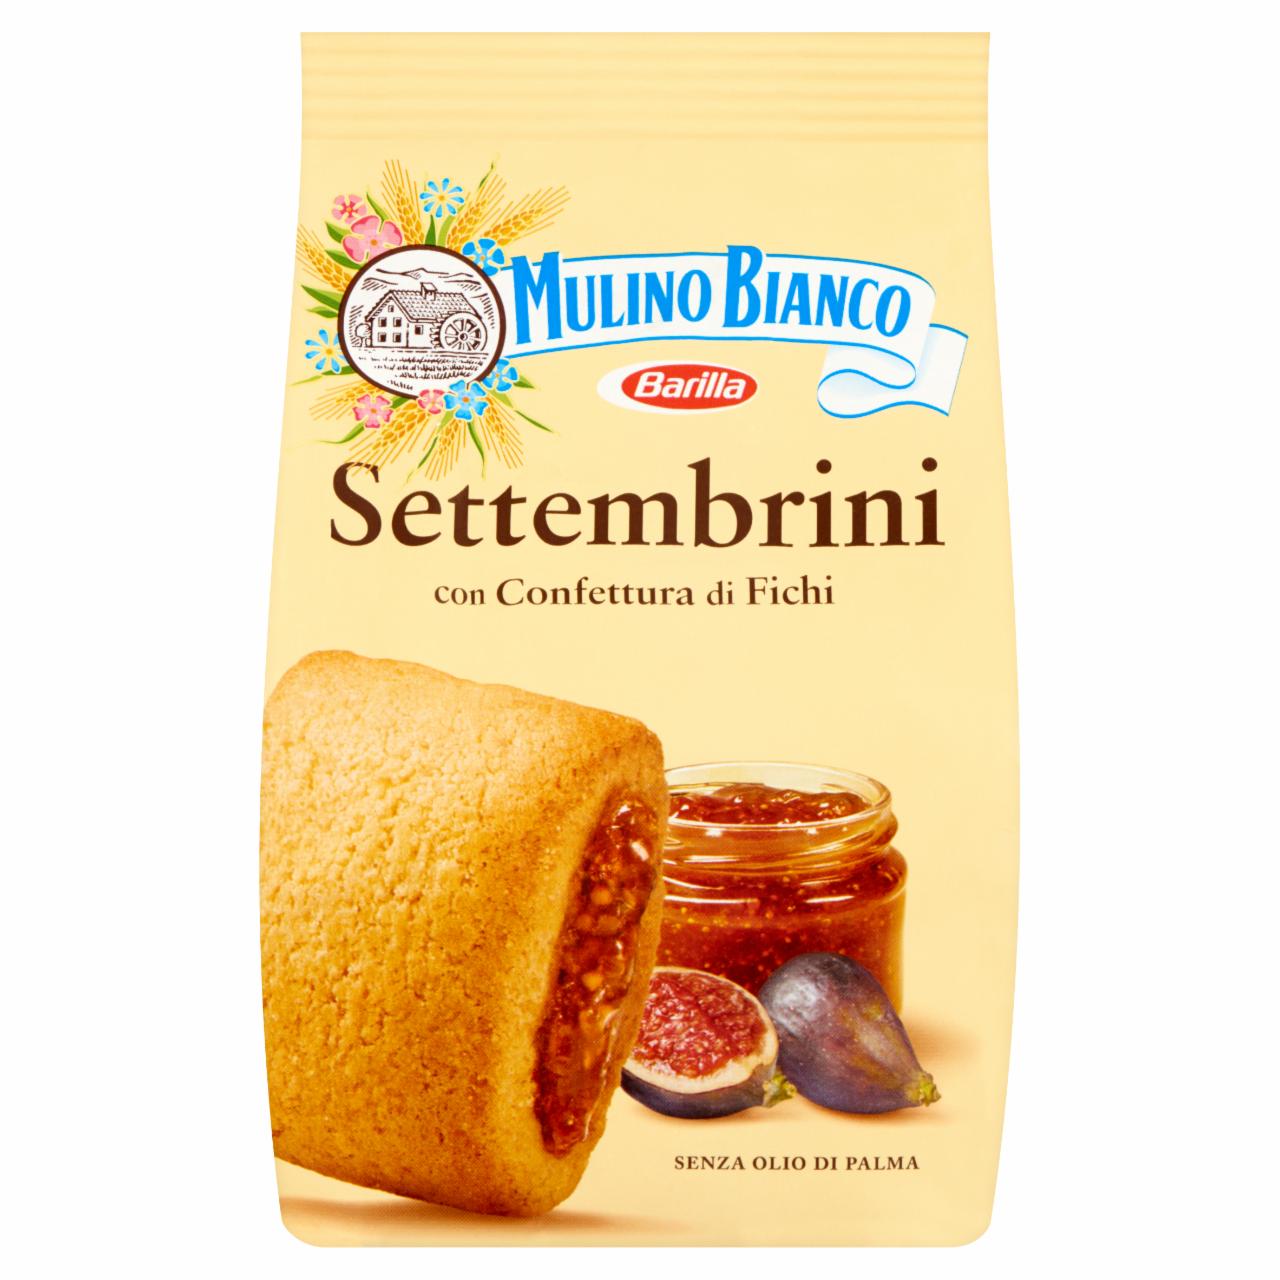 Képek - Mulino Bianco Settembrini édes töltött keksz fügével és fügelekvárral 250 g